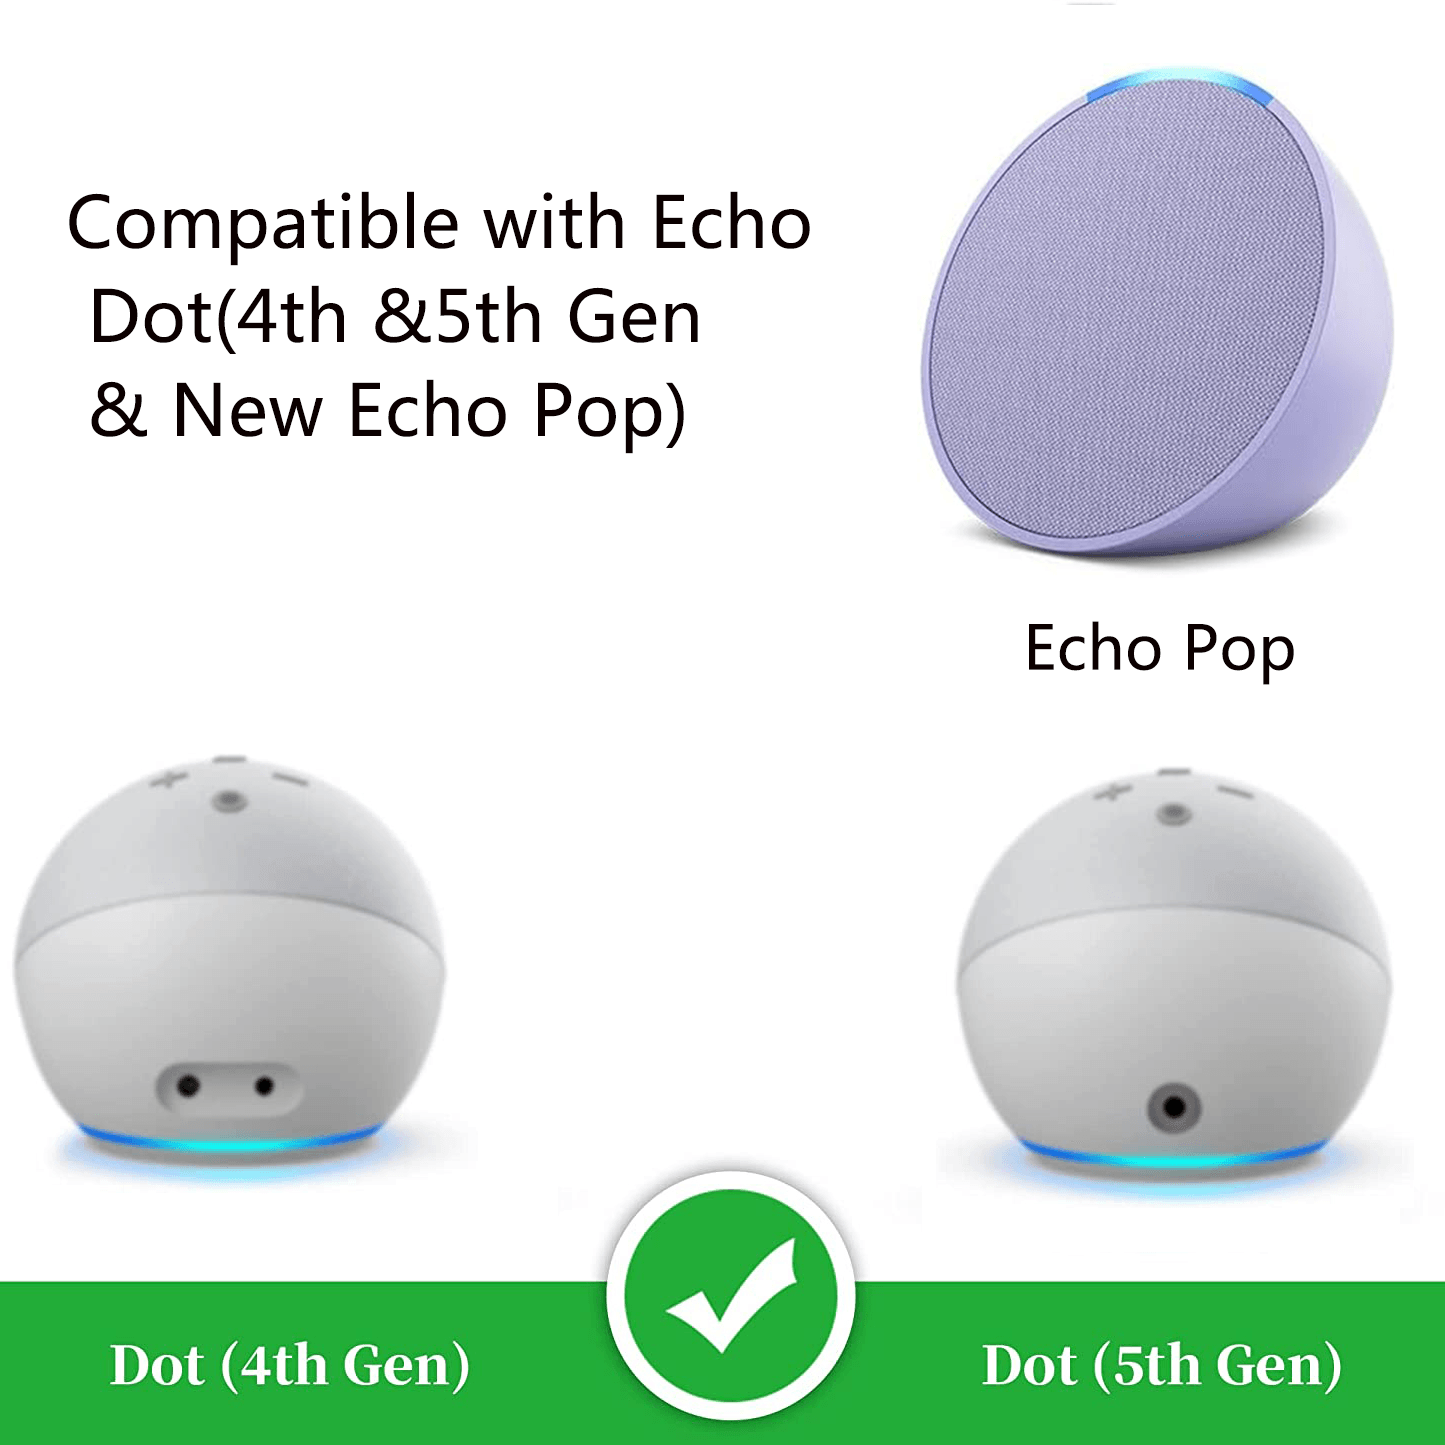  Echo Pop Bundle: Includes Echo Pop